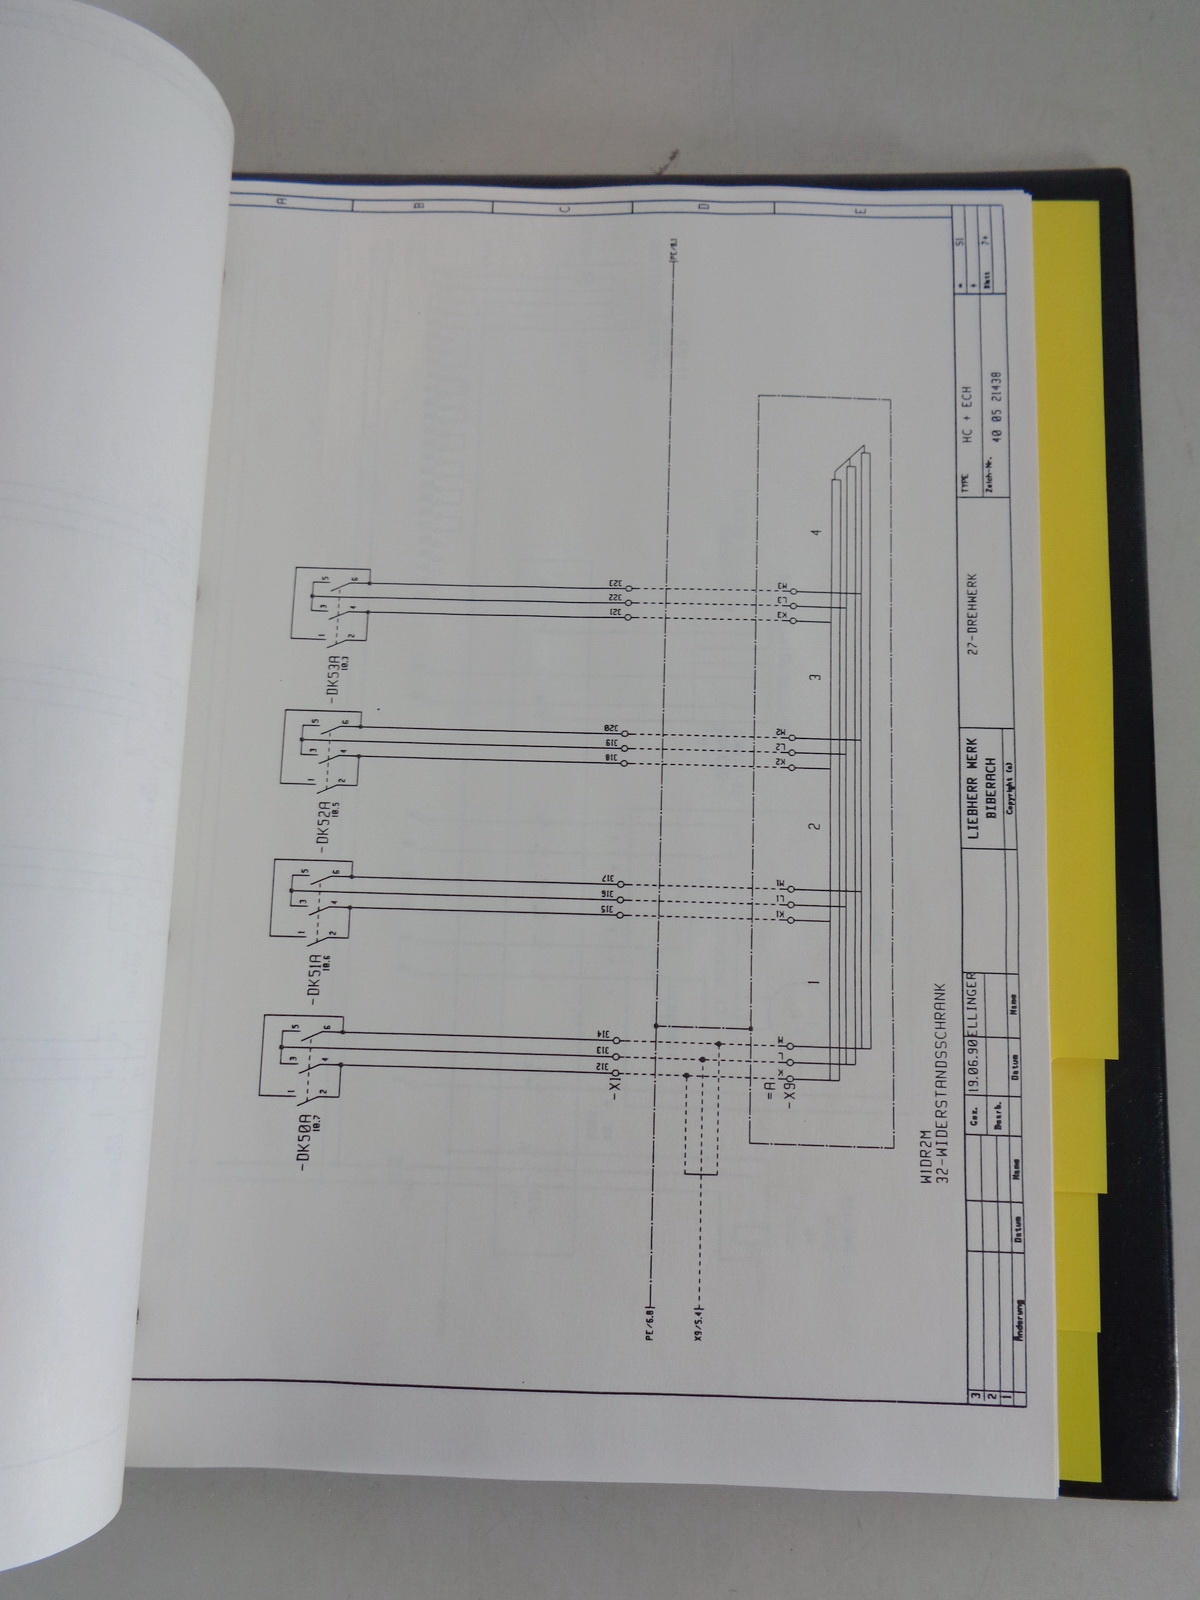 Datenblatt Technische Beschreibung Liebherr Turmdrehkran 112 EC-H von 03/1990 